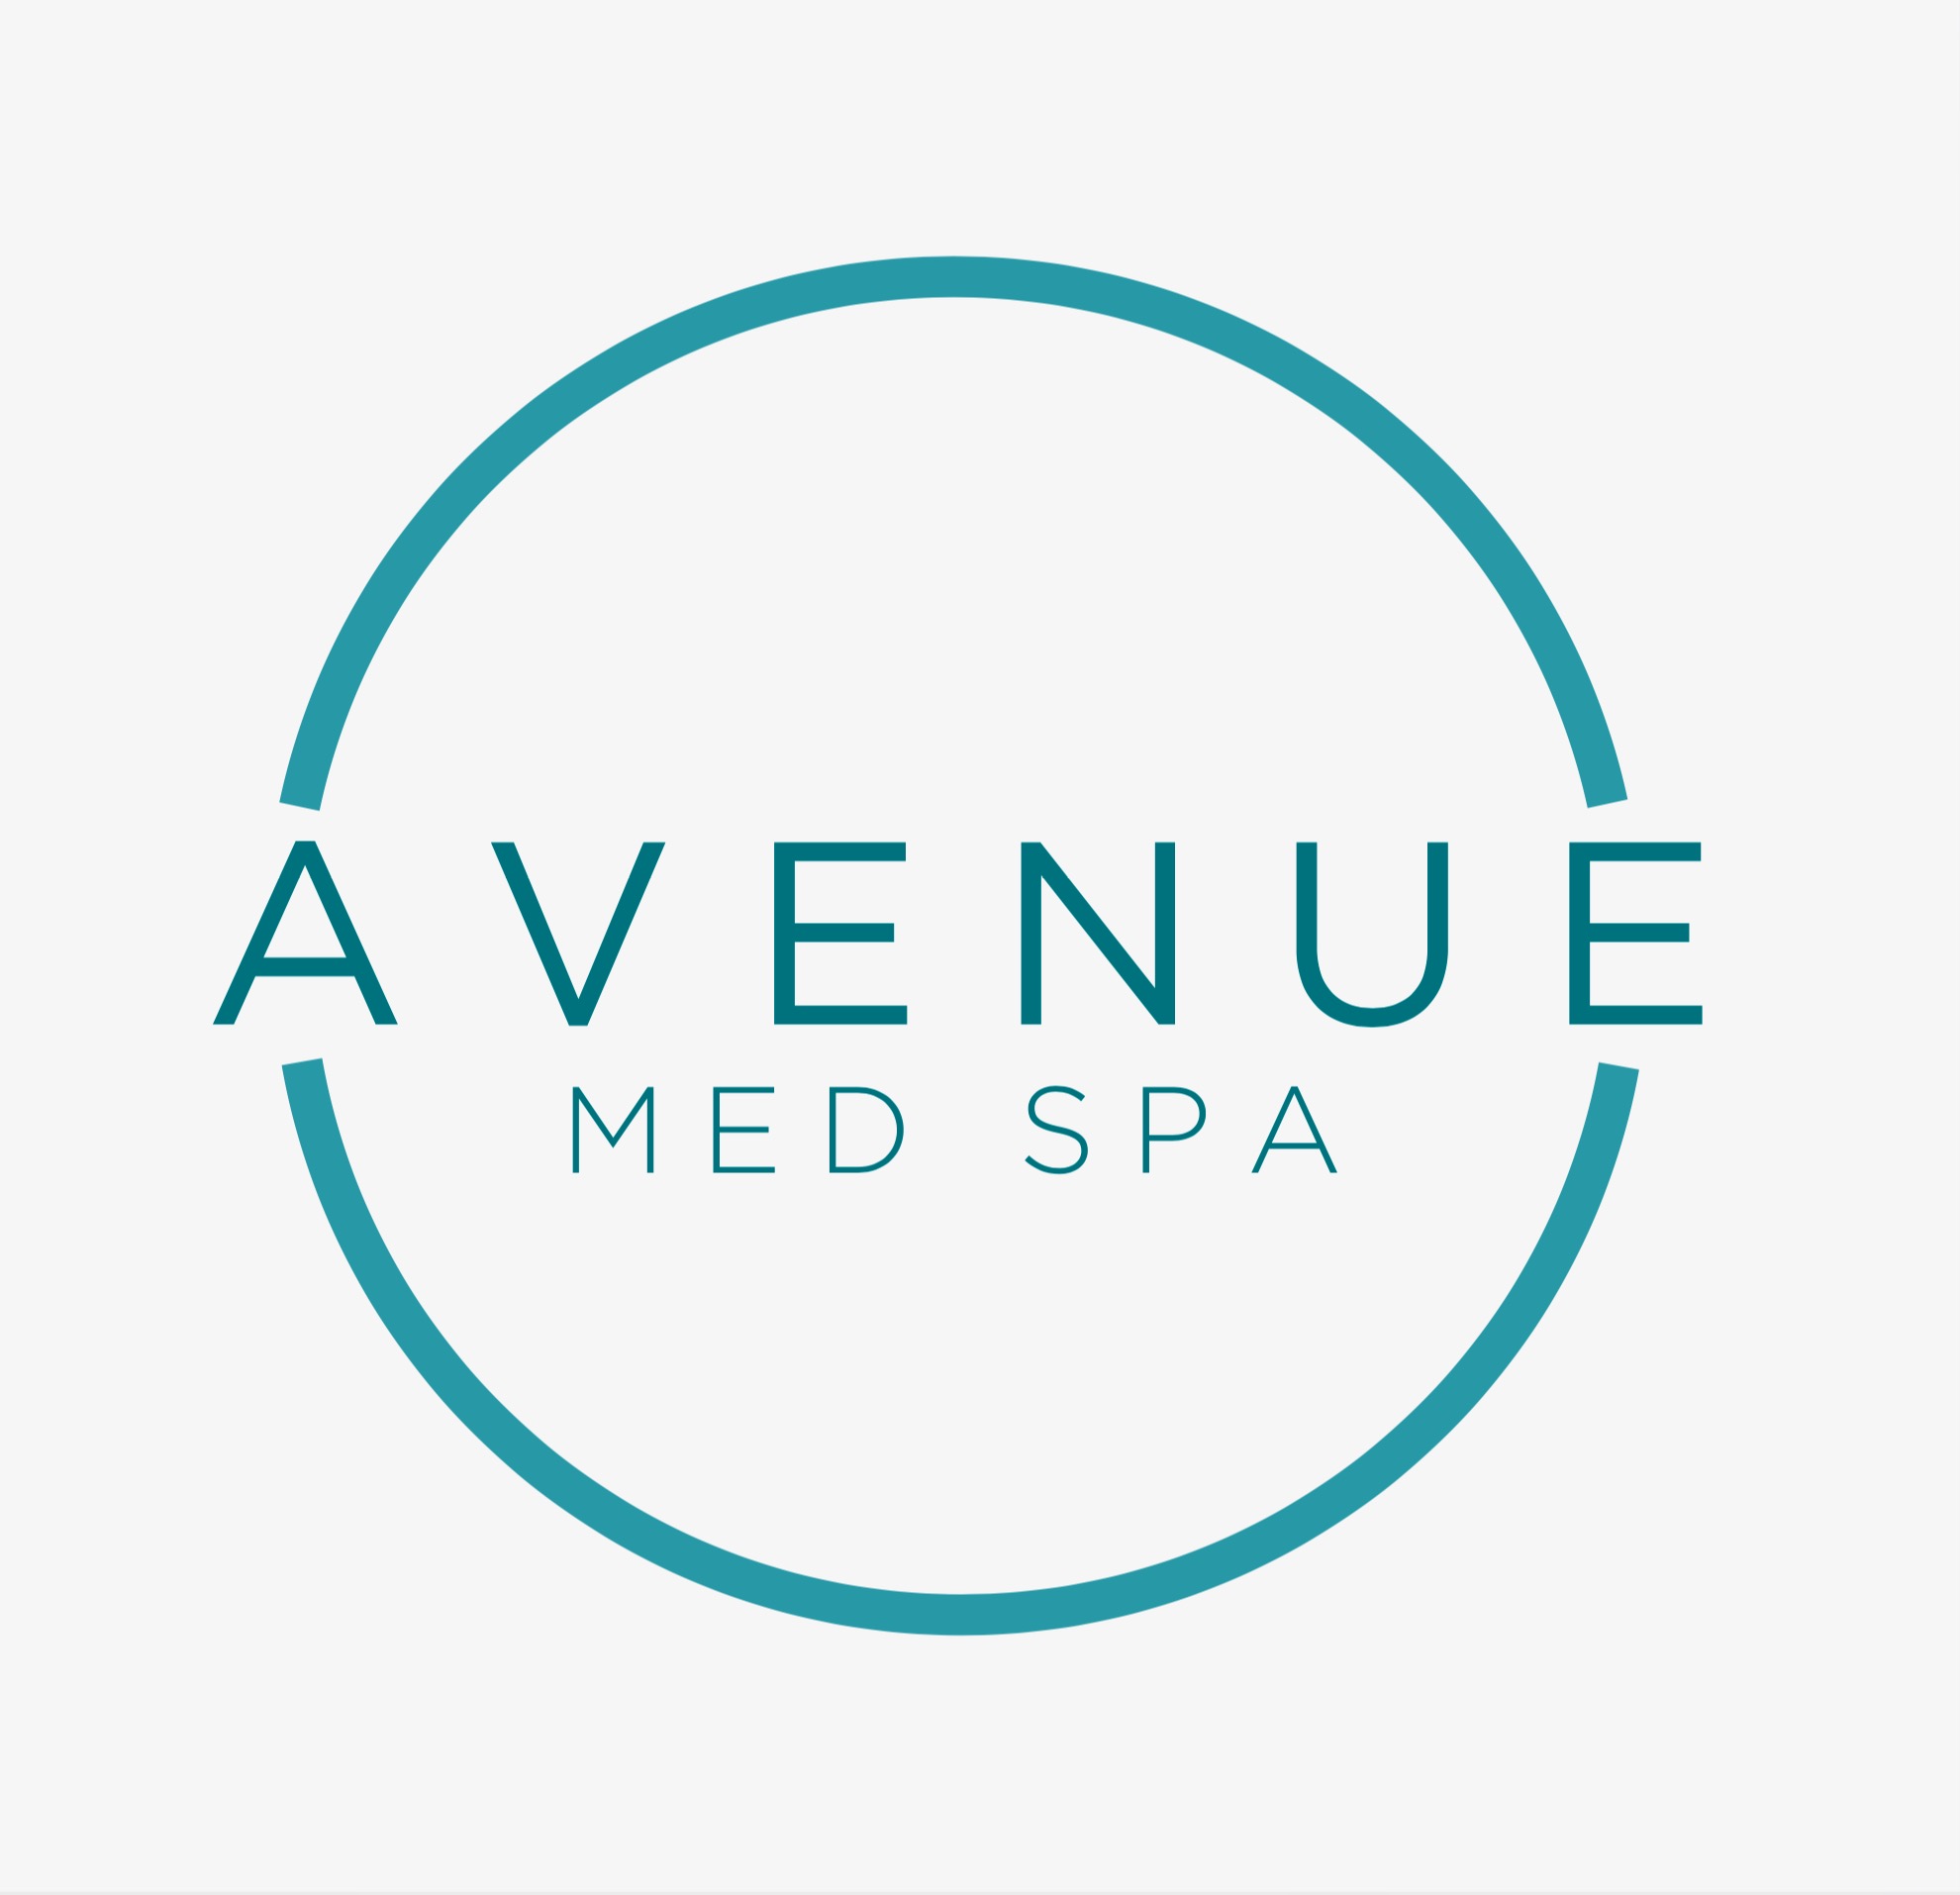 Avenue Med Spa Ltd